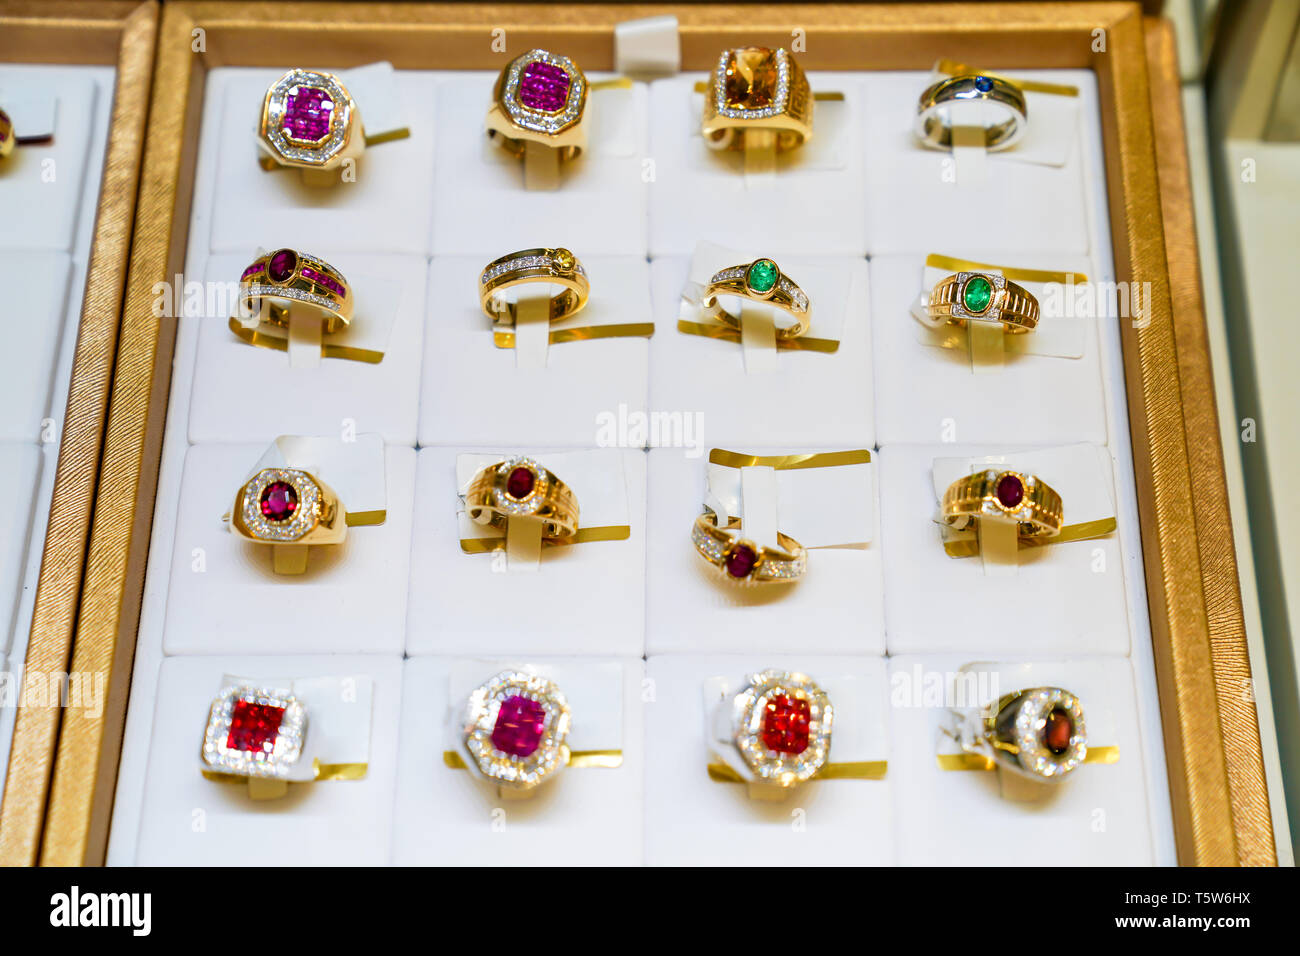 Viele Typ Edelstein Ring jewely auf dem goldenen Teller anrichten, im Display, Jewely speichern. Stockfoto